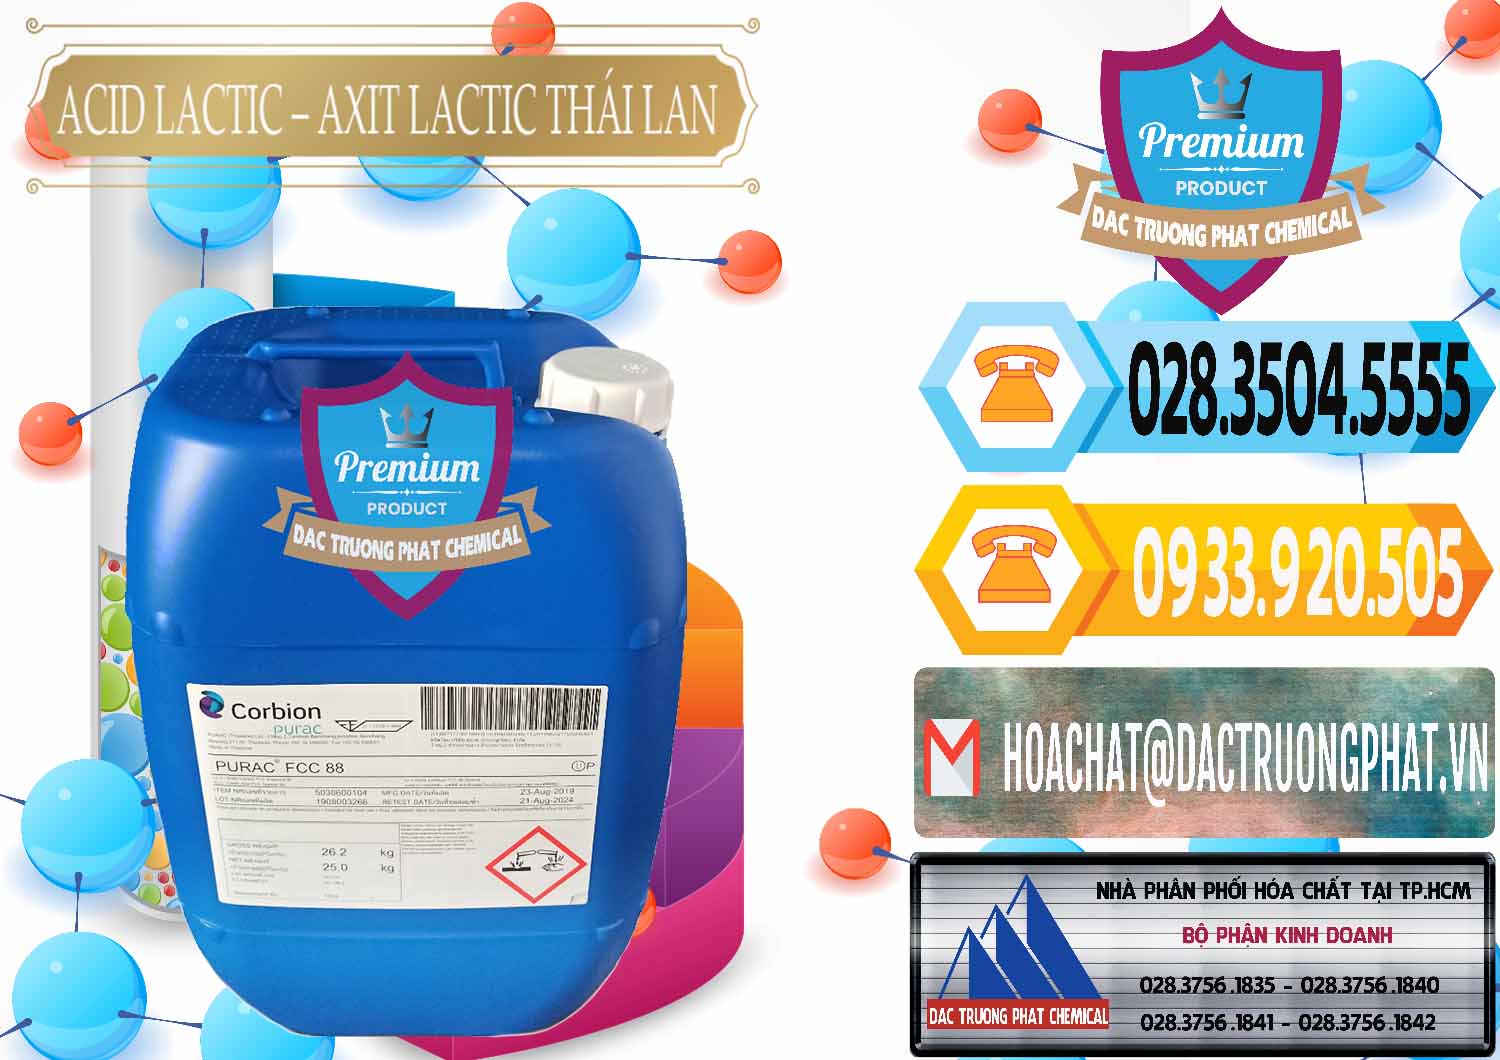 Cty chuyên bán - cung ứng Acid Lactic – Axit Lactic Thái Lan Purac FCC 88 - 0012 - Đơn vị chuyên phân phối và nhập khẩu hóa chất tại TP.HCM - hoachattayrua.net